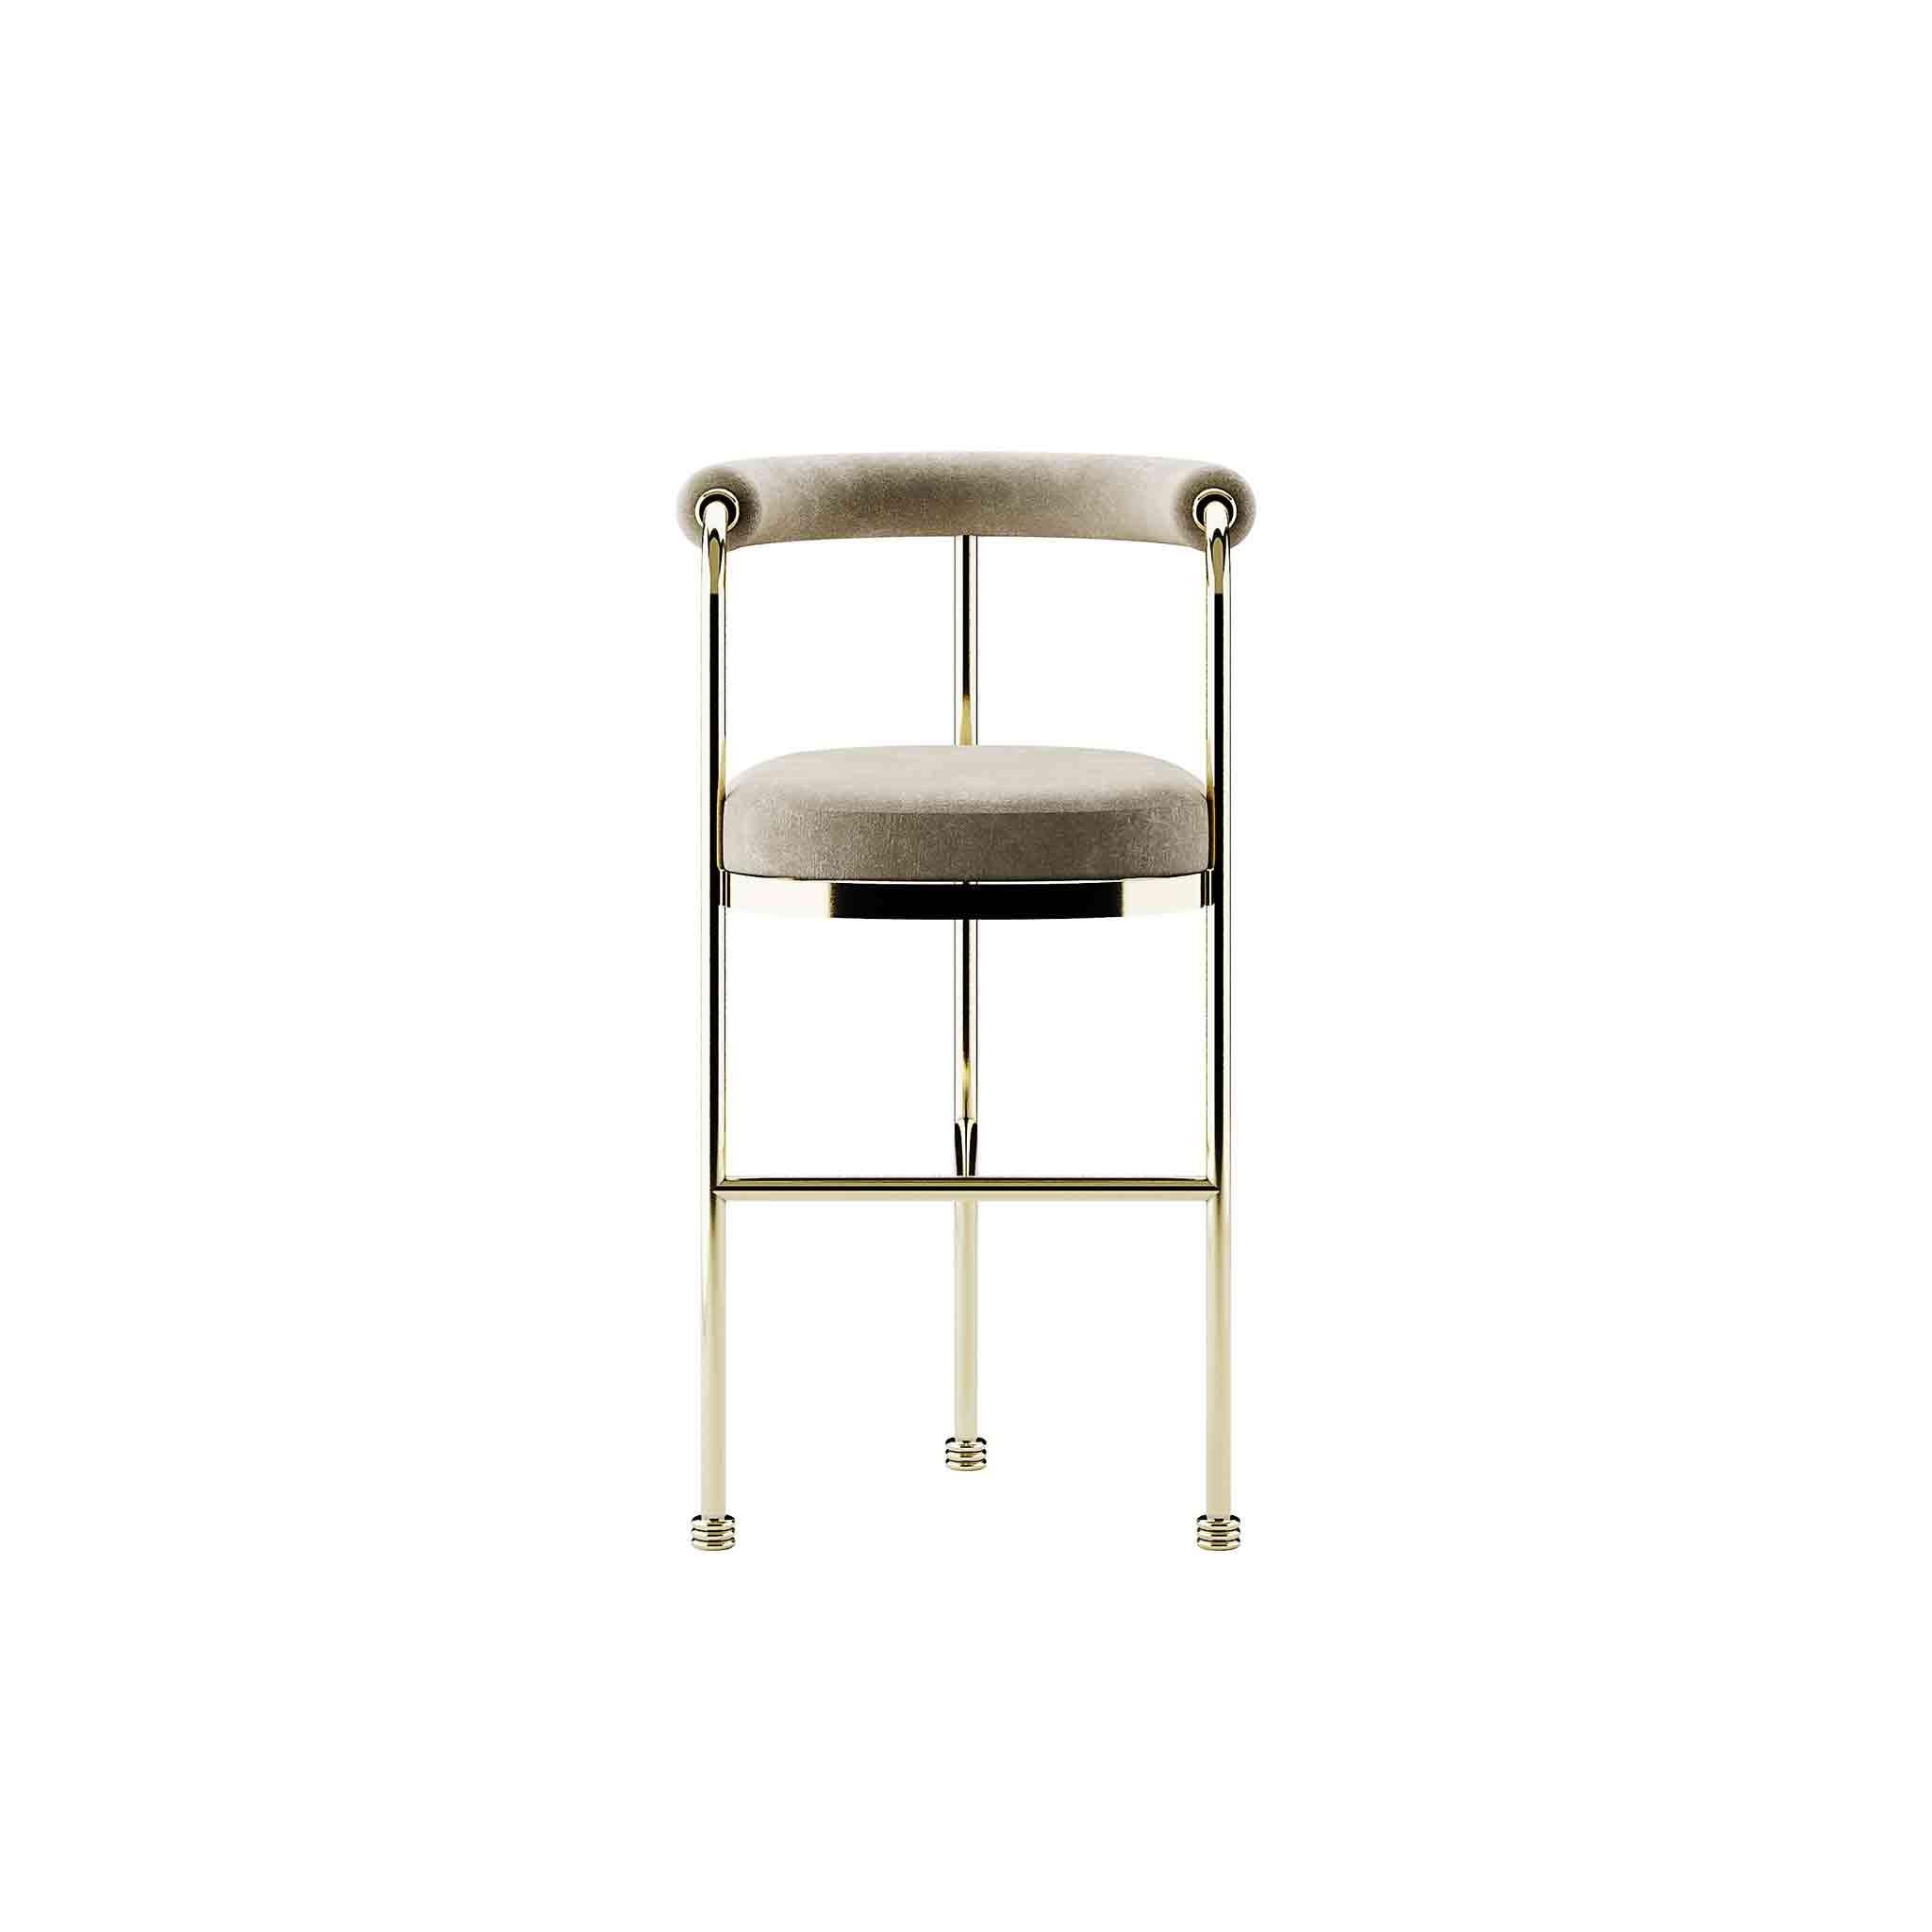 Edition limitée : Chaise de bar ou de comptoir en velours moderne de style Art Déco avec détails dorés

La chaise Joann est une chaise de bar de style mid-century. Il rehaussera n'importe quel espace, améliorant ainsi votre prochain projet